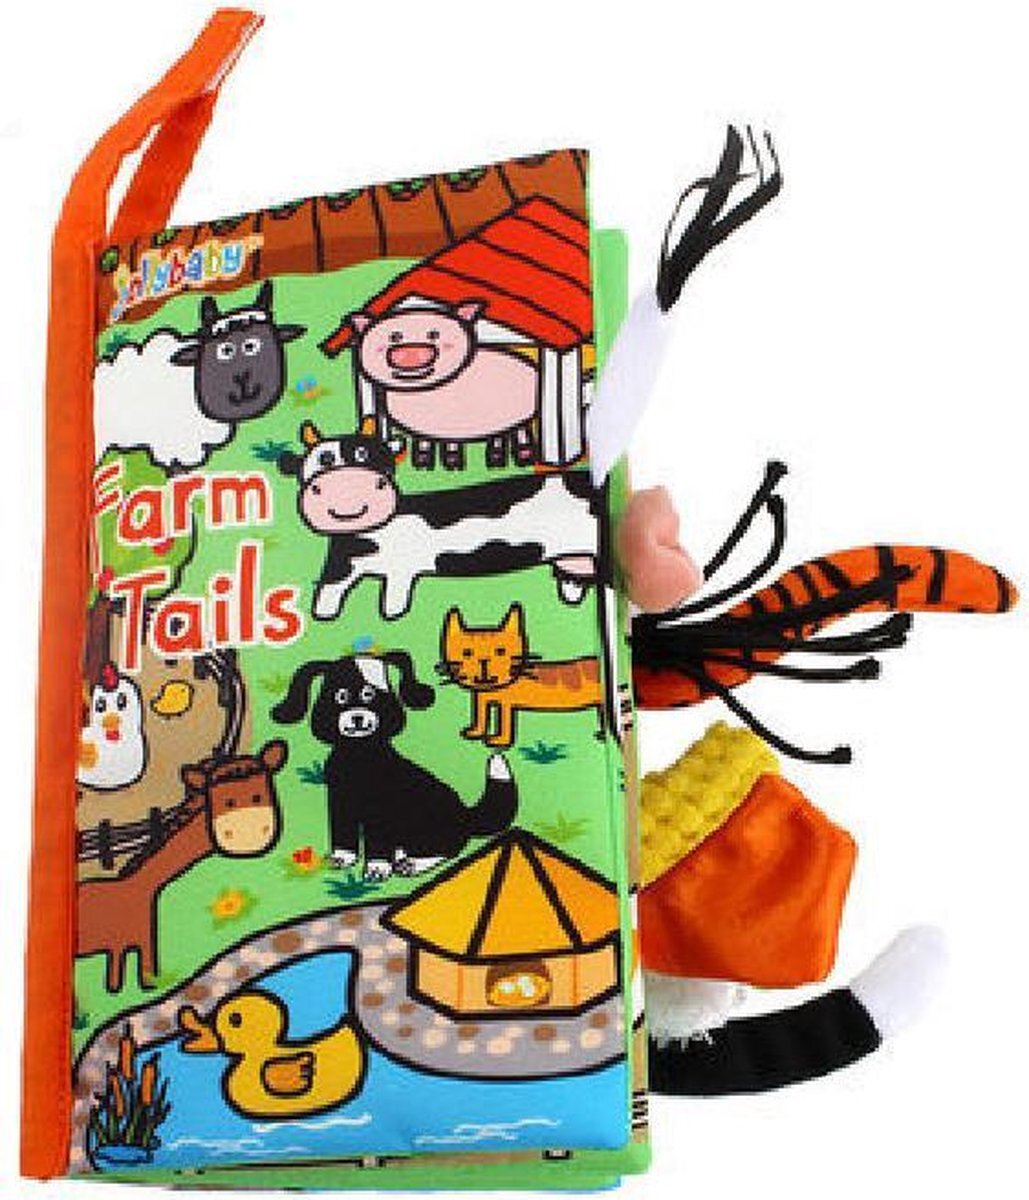 JollyBaby Baby speelgoed/knisperboekje/schoencadeautjes sinterklaas /Educatief Baby Speelgoed /Zacht Baby boek /Zacht Speelgoed/Speelgoed voor baby/ Speelgoed Voor Kinderen/ "Farm tails" thema